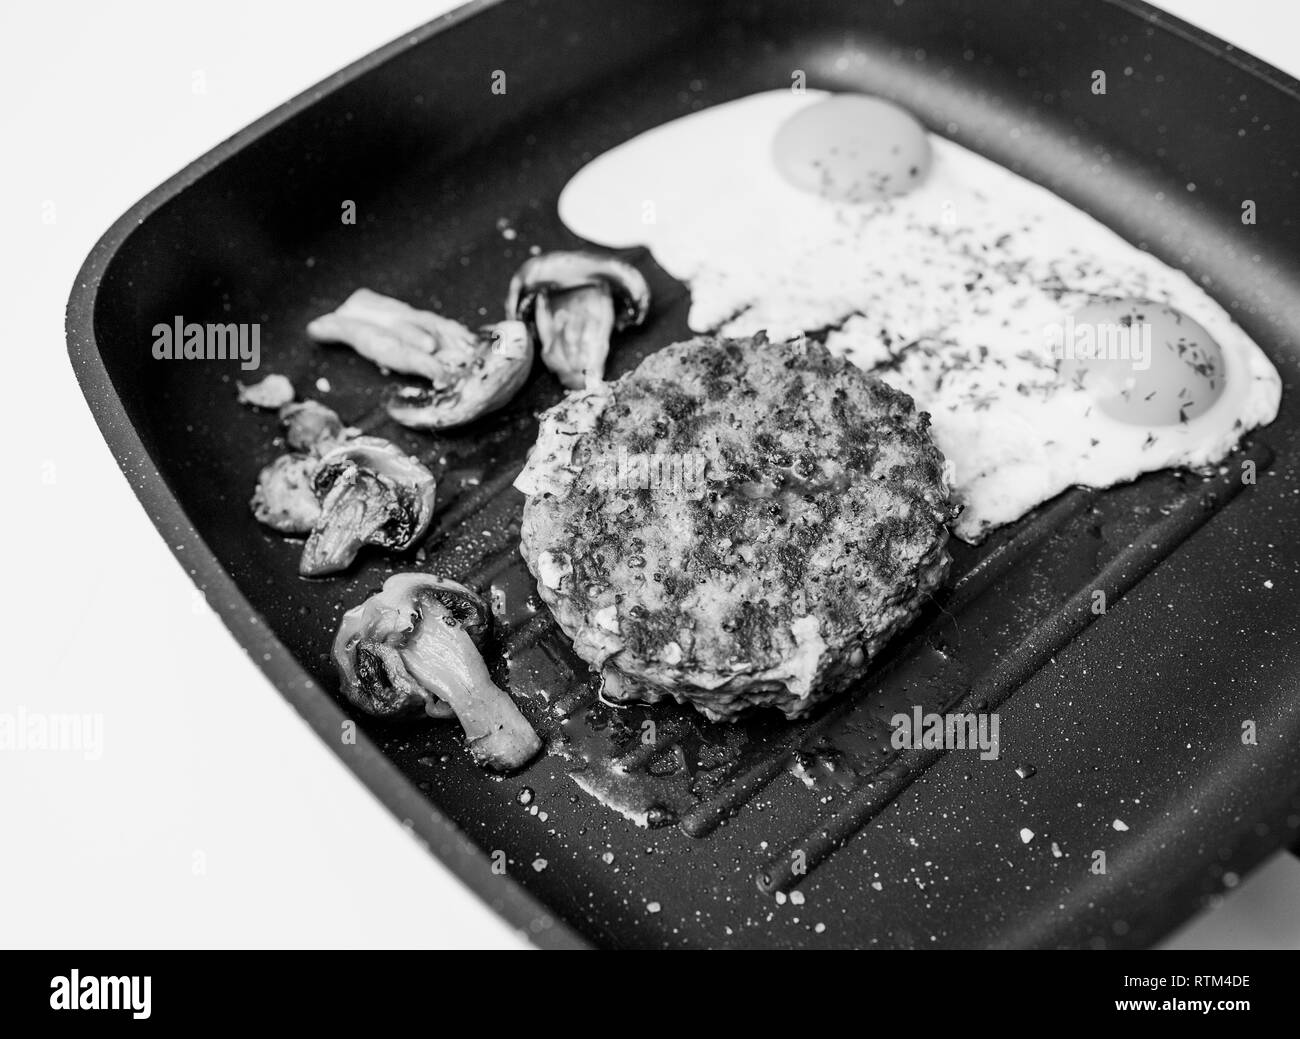 Al di sopra della deliziosa carne di manzo crudo hamburger di carne cotta in padella su teflon grill superficie in cucina con due uova fritte con organici champignon fritti immagine in bianco e nero Foto Stock